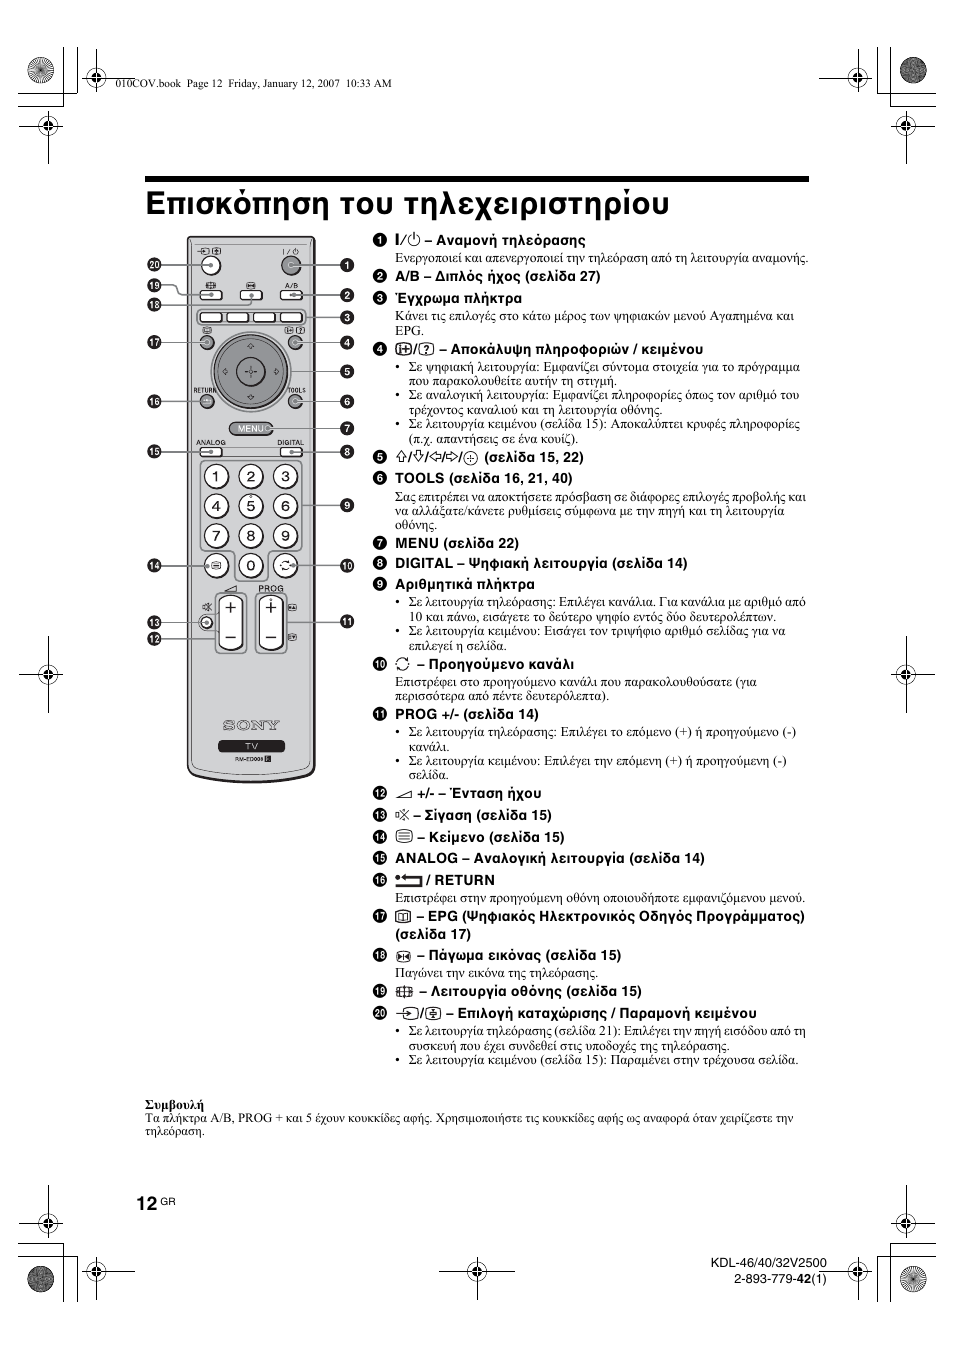 Επισκ πηση του τηλεχειριστηρίου | Инструкция по эксплуатации Sony KDL-46V2500 | Страница 92 / 216